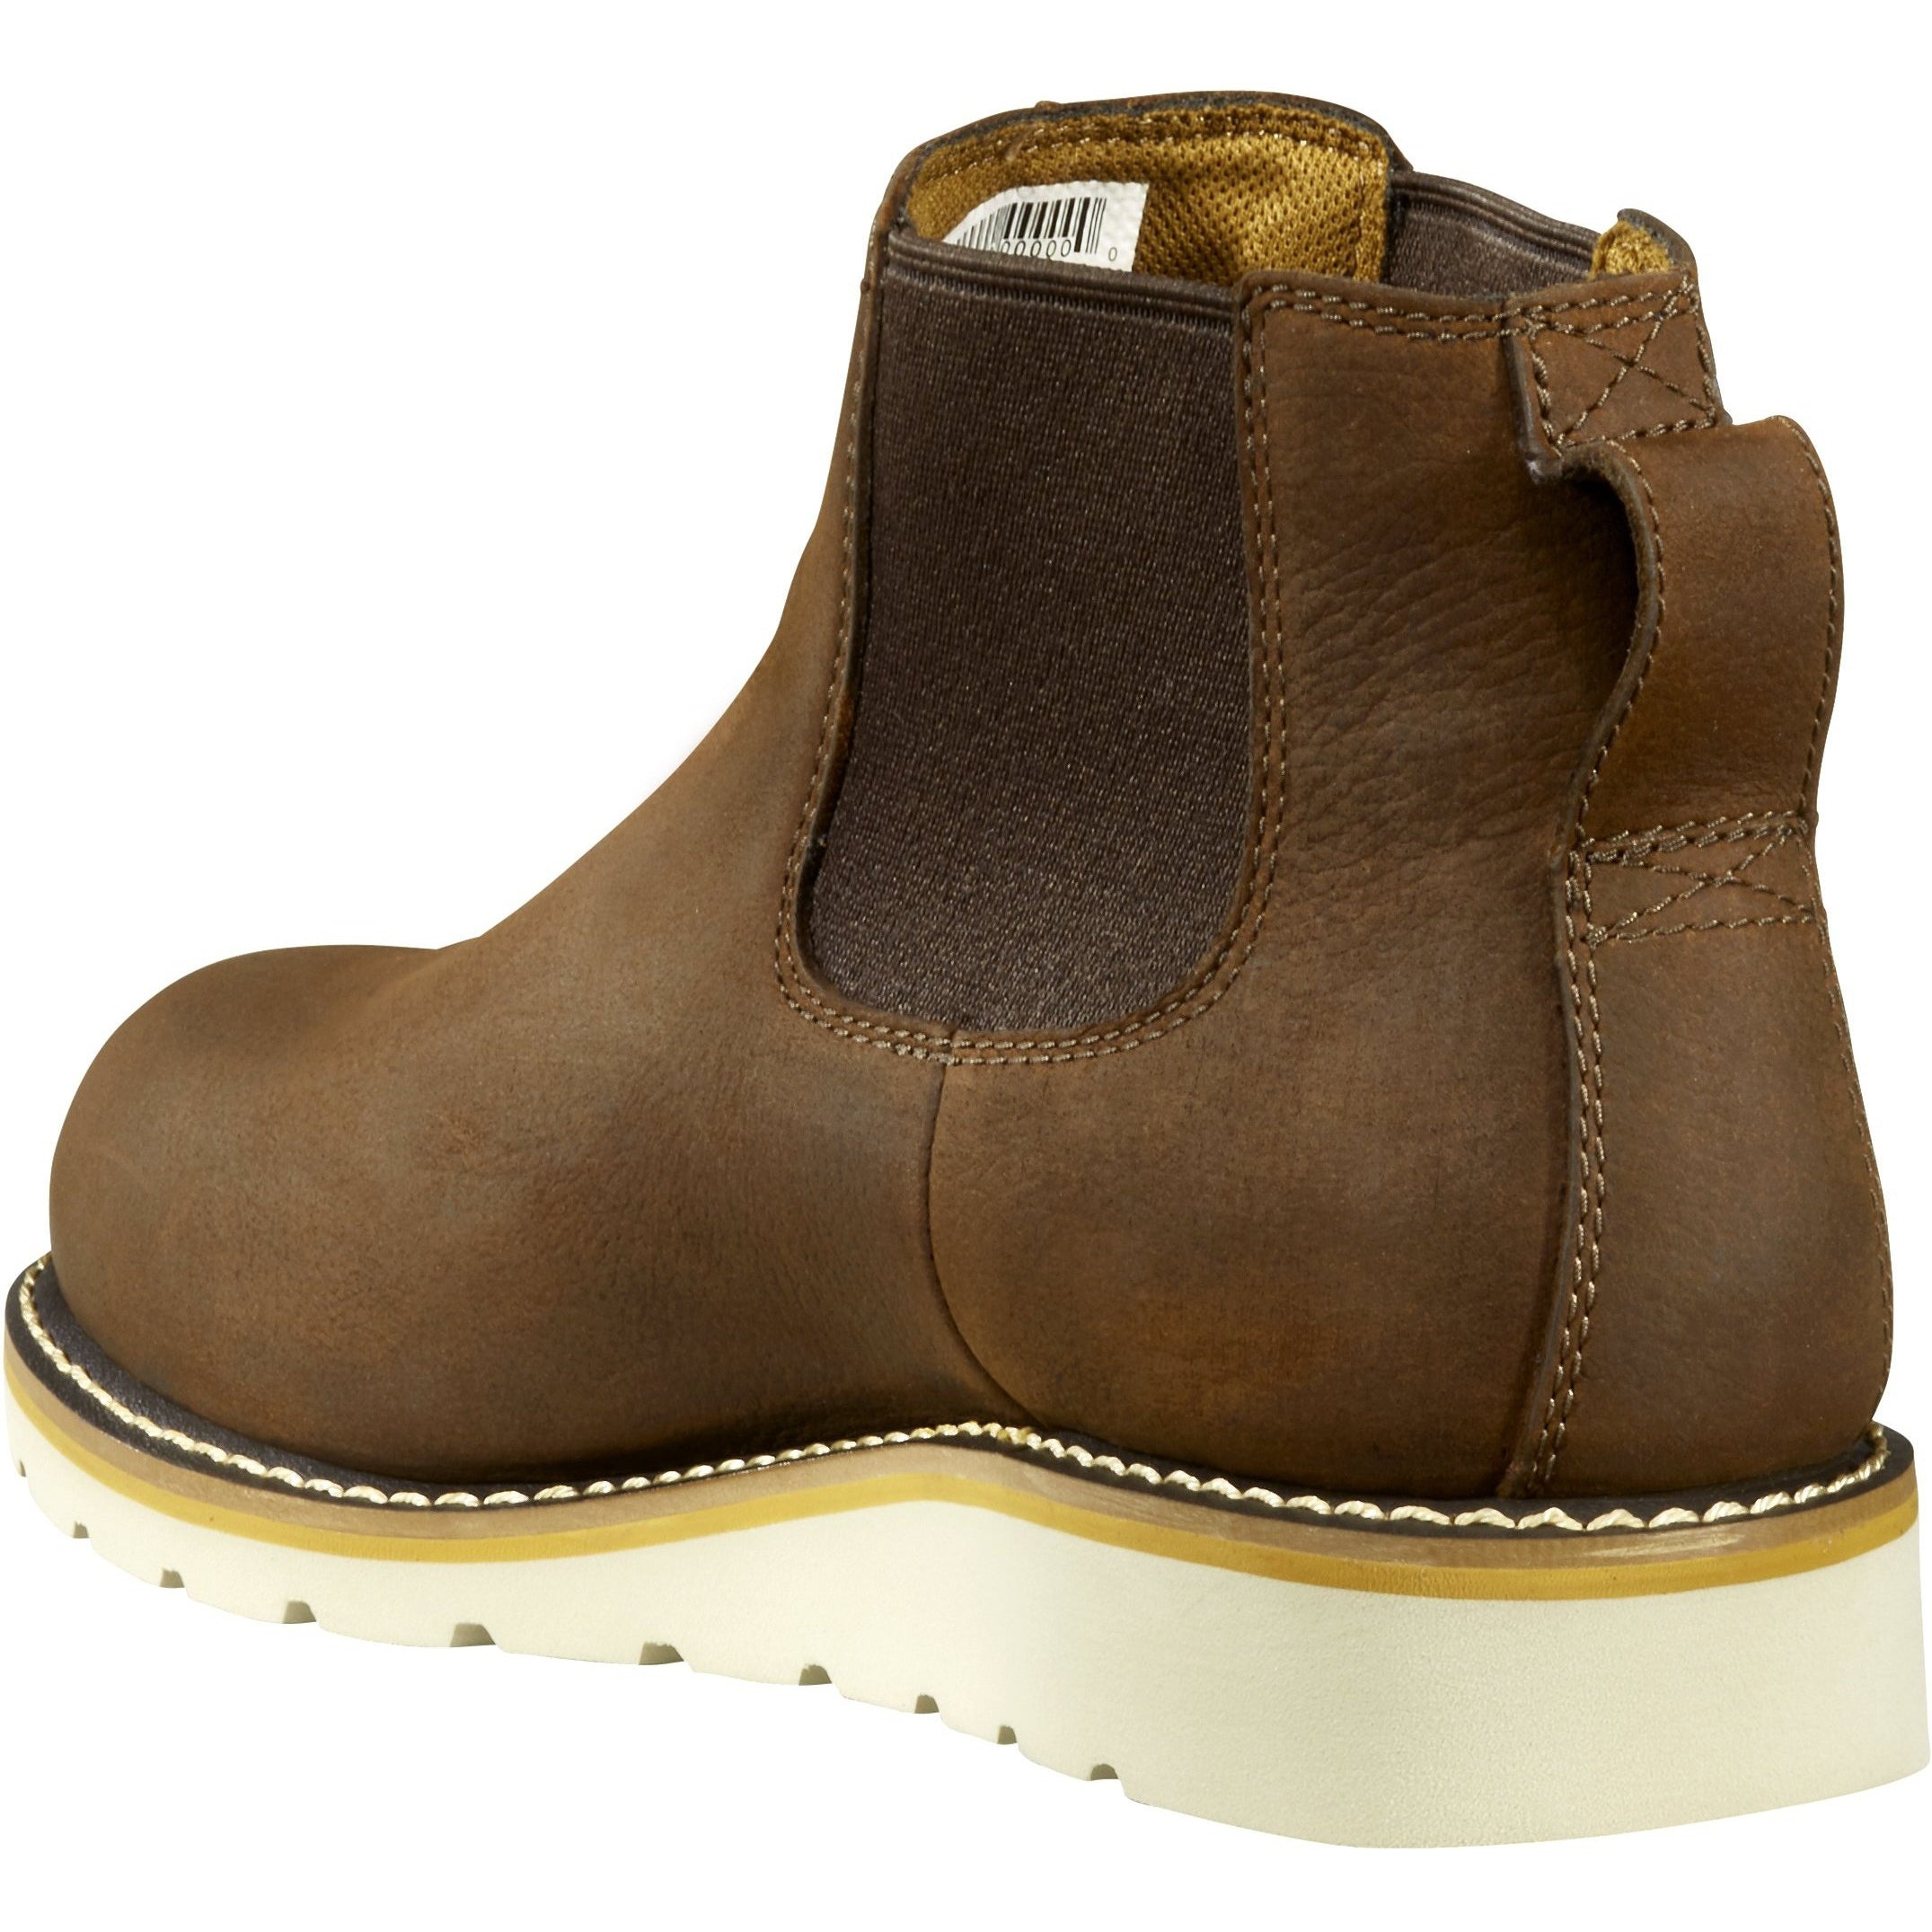 Carhartt Men's Chelsea 5" Steel Toe Wedge Work Boot - Brown - FW5233-M  - Overlook Boots